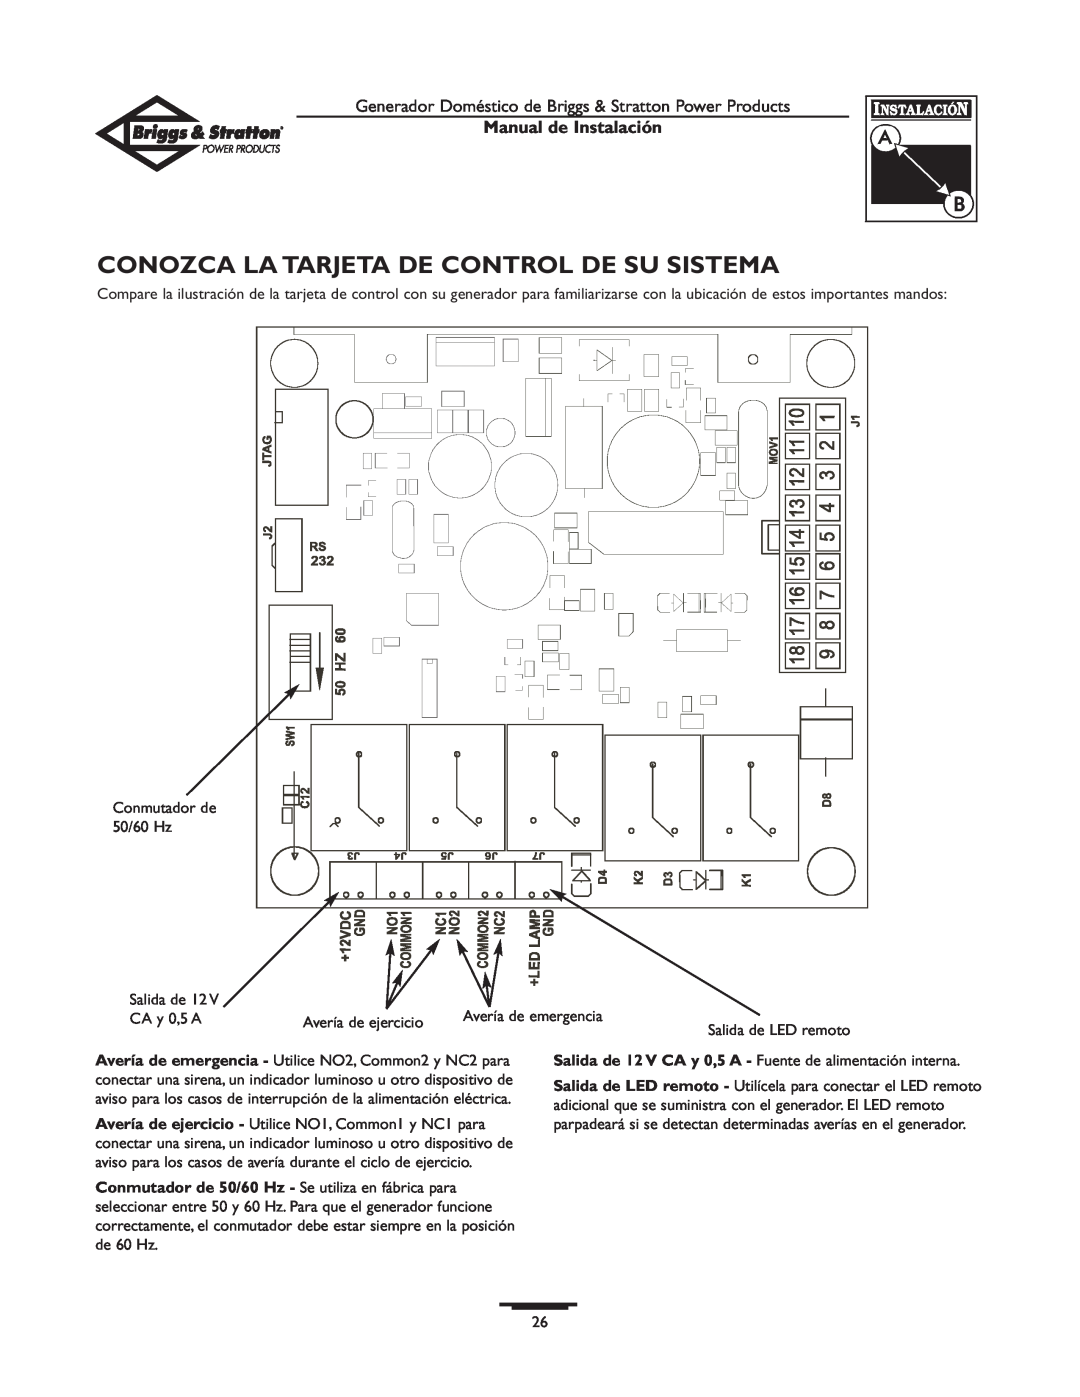 Briggs & Stratton 01938-0 manual Conozca La Tarjeta De Control De Su Sistema, Manual de Instalación 